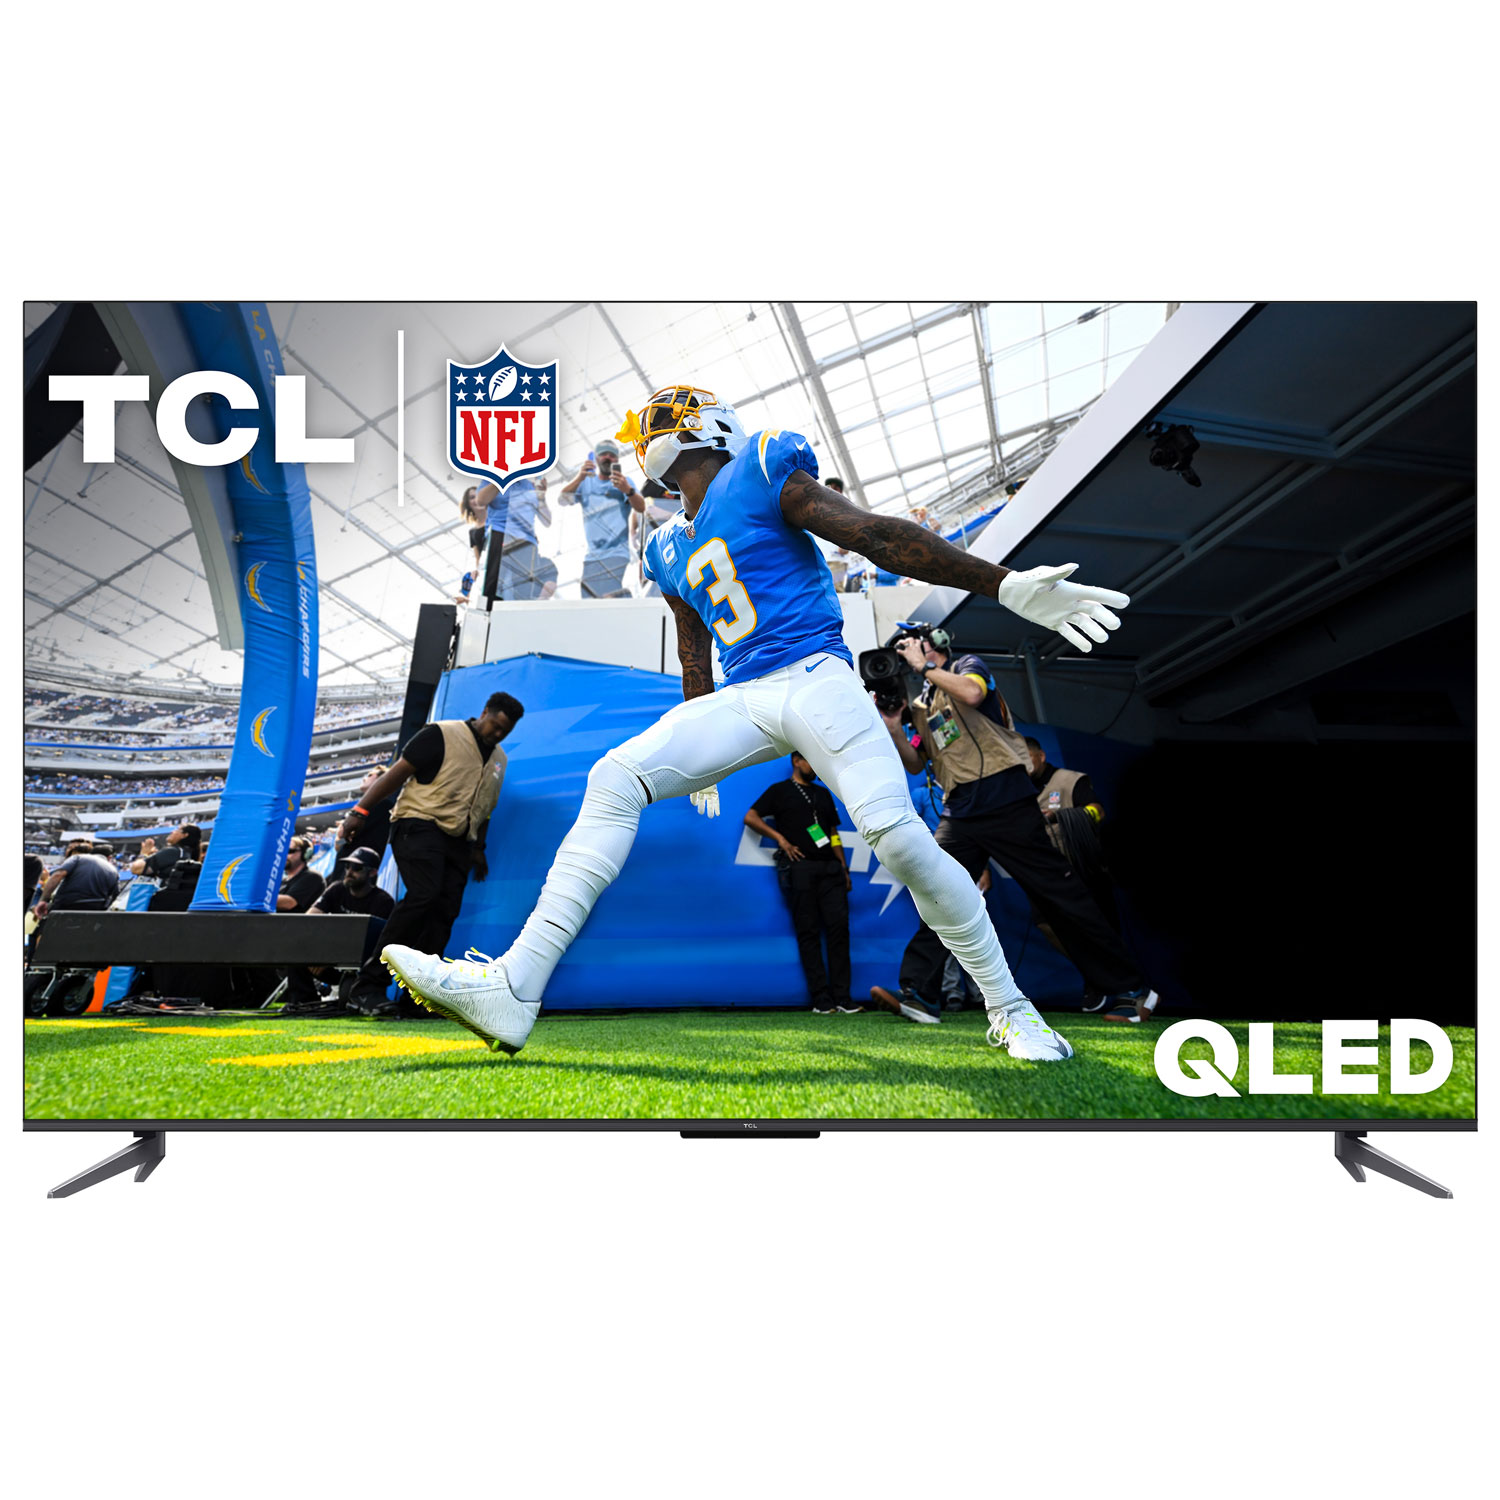 TCL Q5 65" 4K UHD HDR QLED Google TV Smart TV (65Q550G-CA) - 2023 - Only at Best Buy